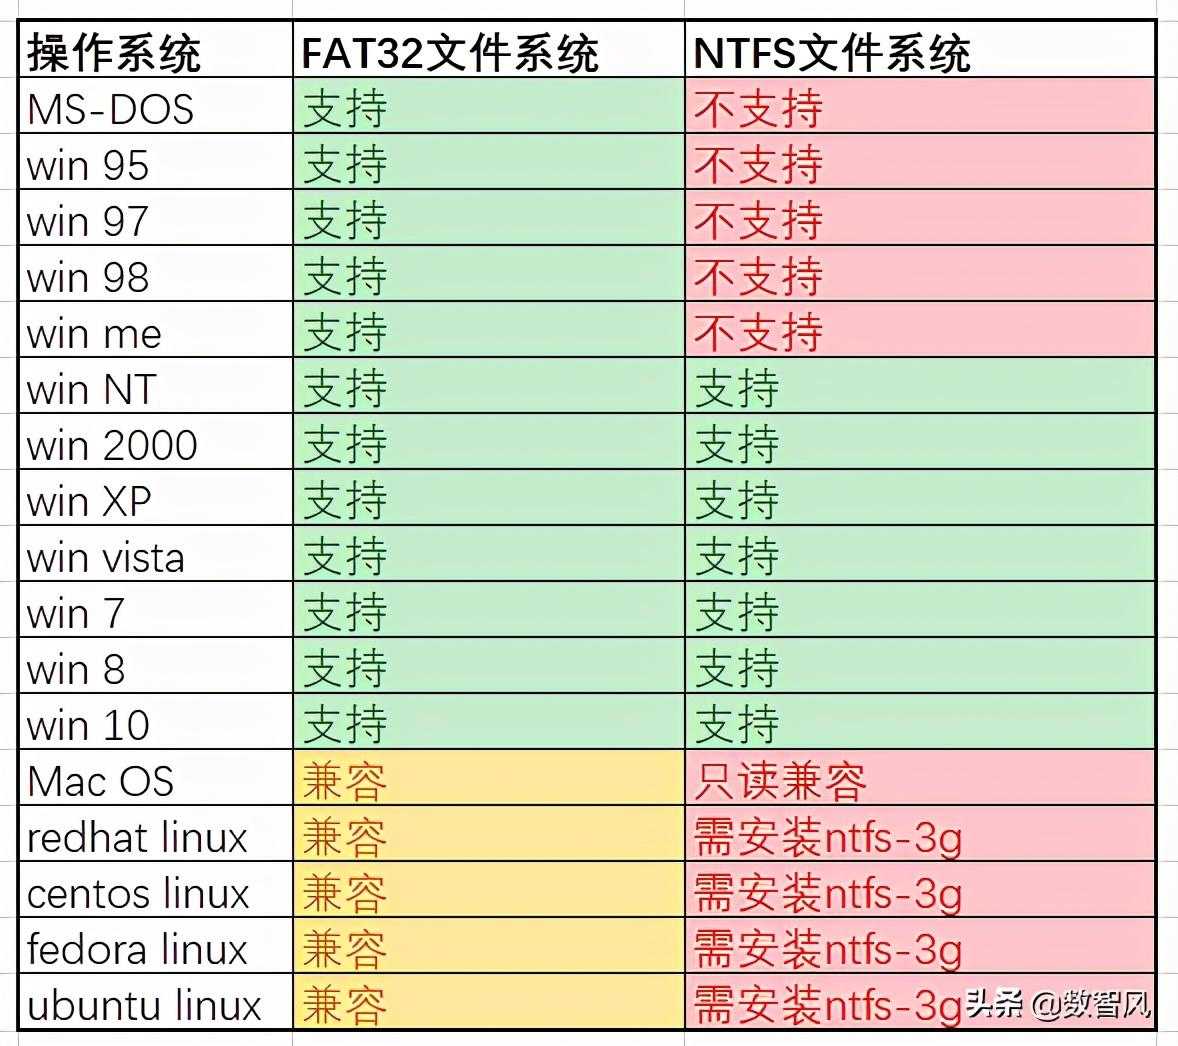 一文了解NTFS和FAT32的真正区别